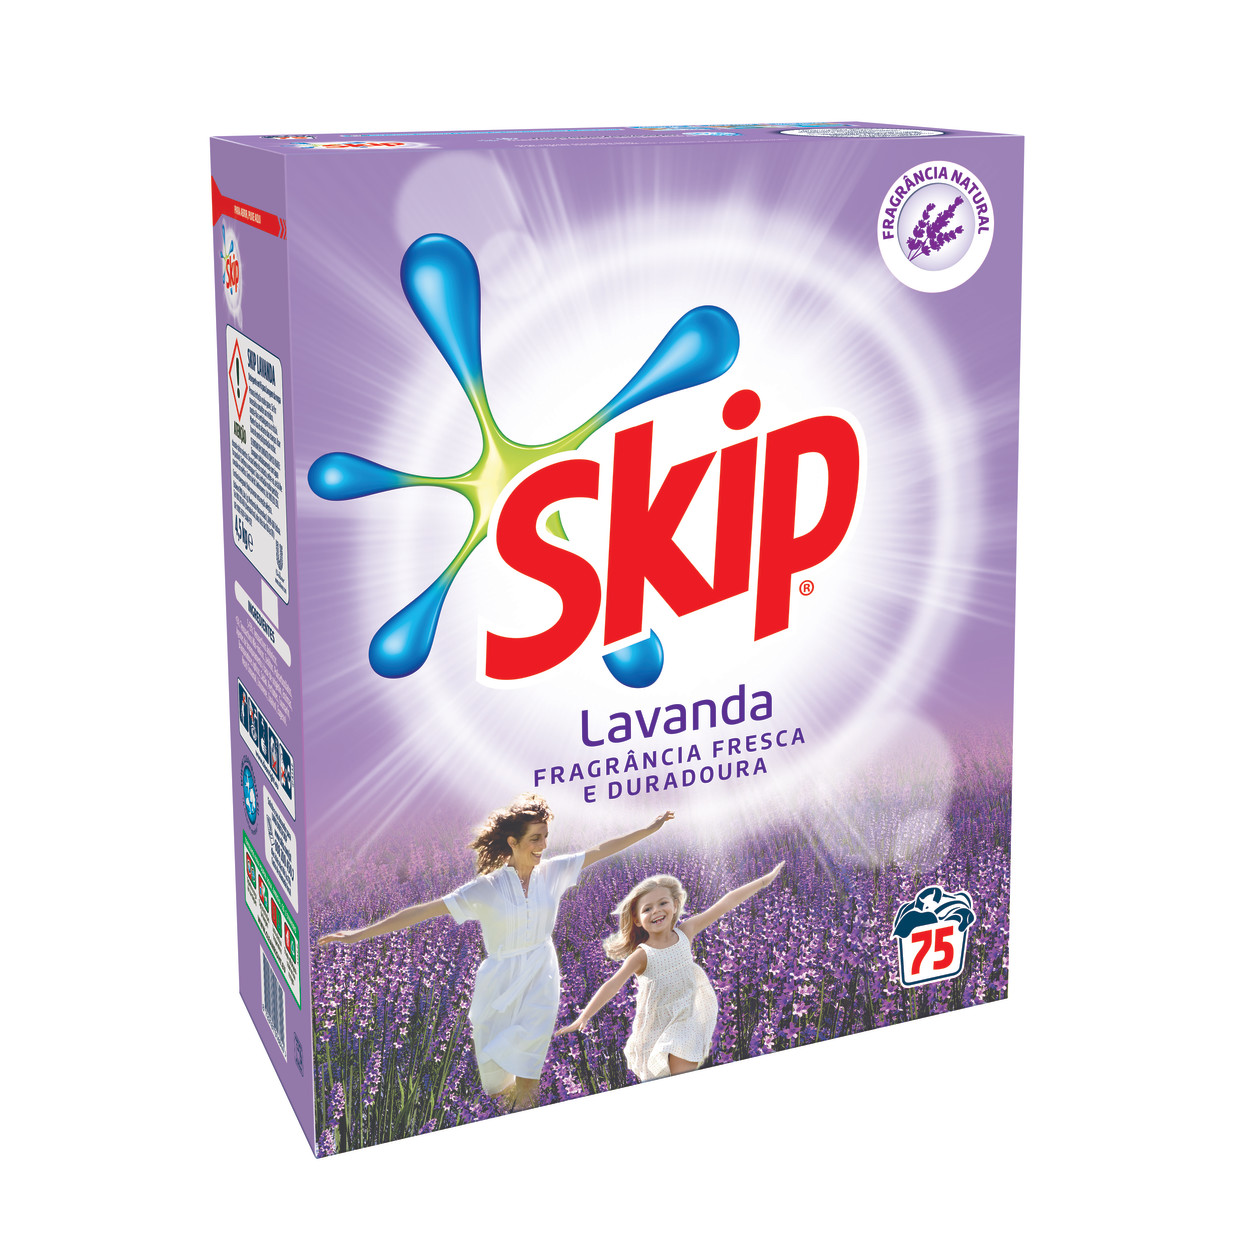 SKIP Detergente Pó Lavanda packshot